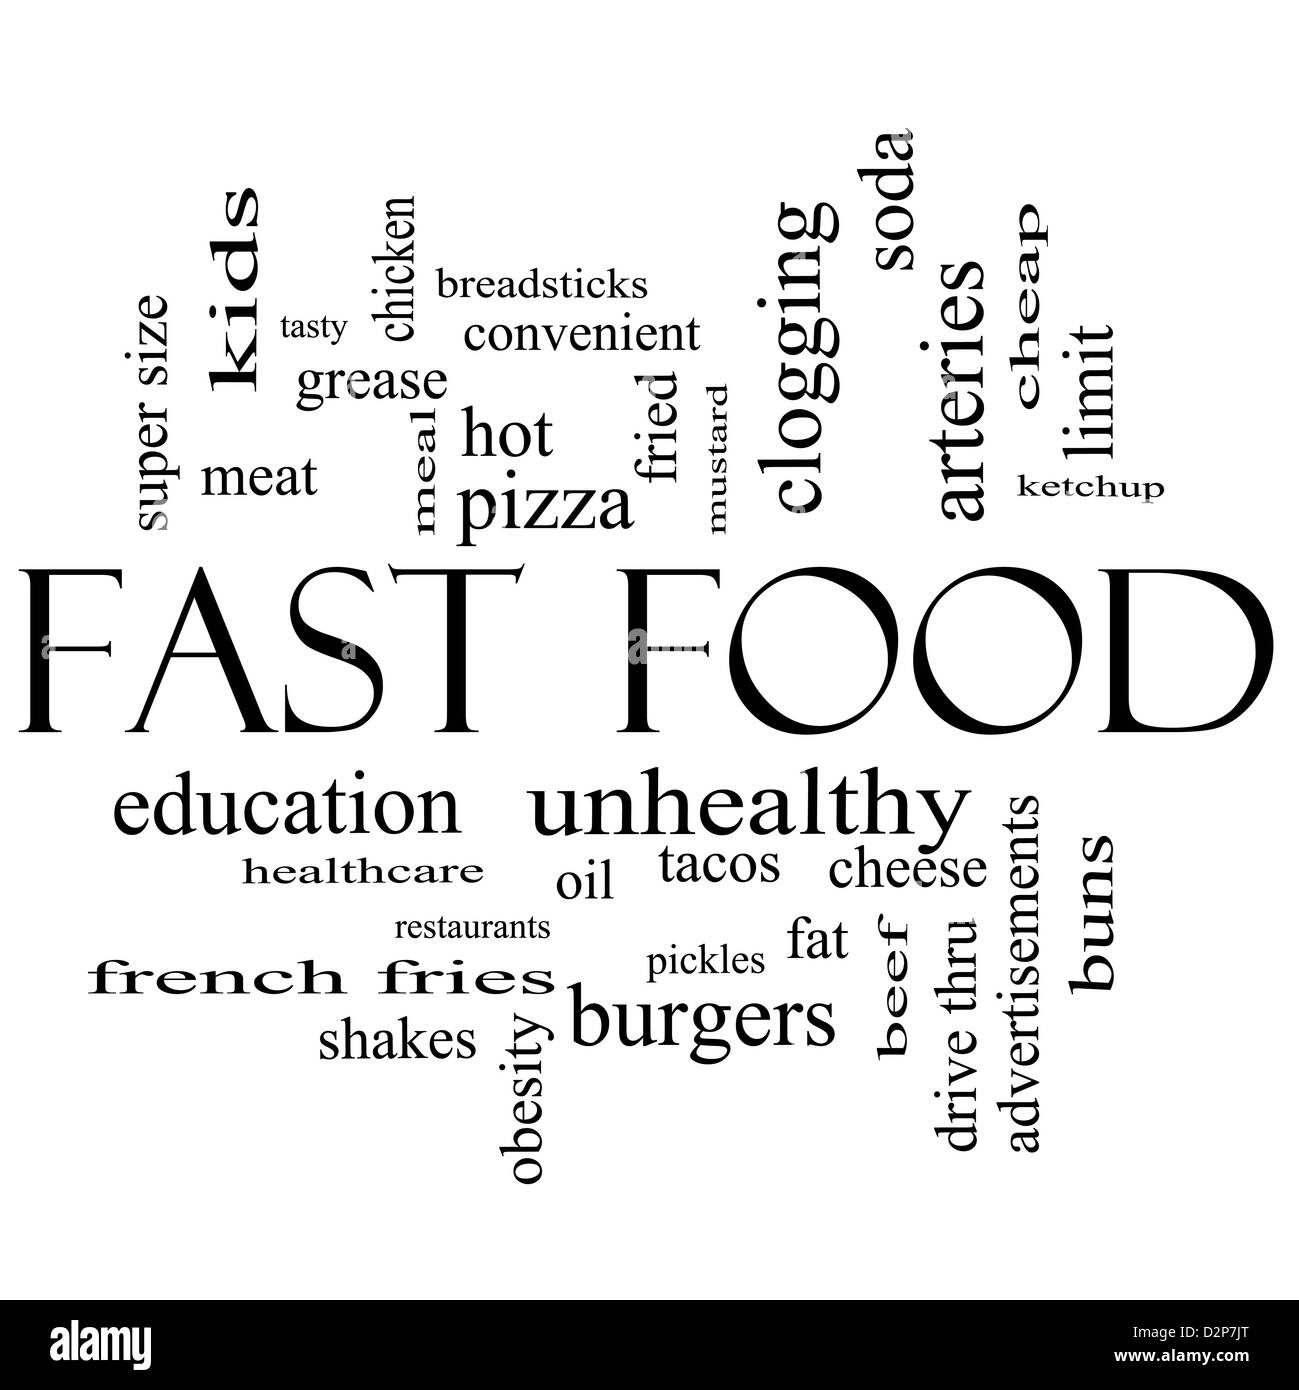 Fastfood-Word Cloud-Konzept in schwarz und weiß mit großen Begriffe wie  ungesund, Fett, Fett, Hamburger, Essen und vieles mehr Stockfotografie -  Alamy